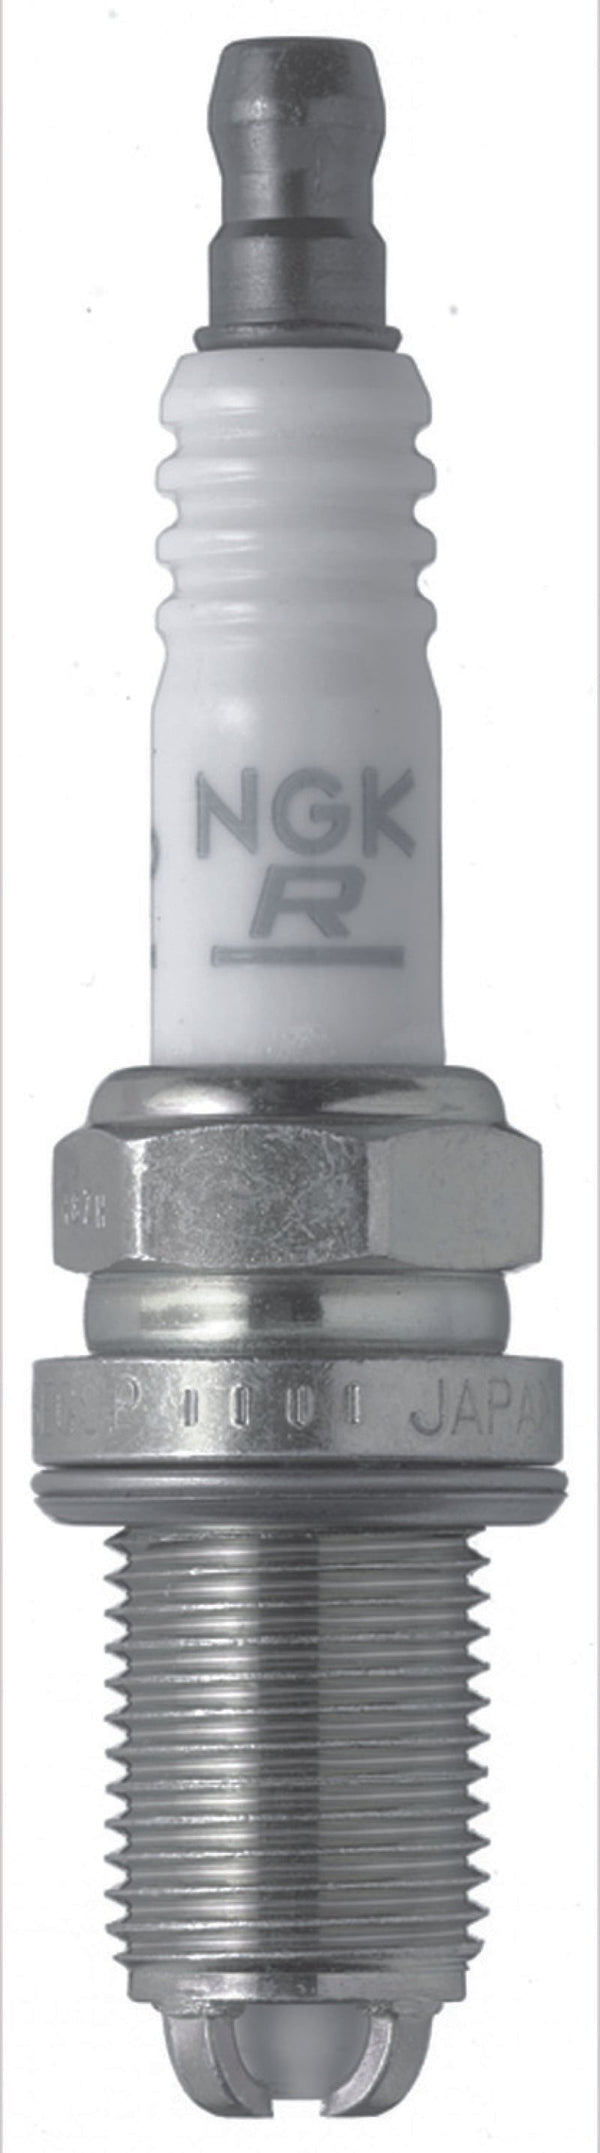 NGK Laser Platinum Spark Plug Box of 4 (BKR7EQUP) - Premium Spark Plugs from NGK - Just 133.11 SR! Shop now at Motors